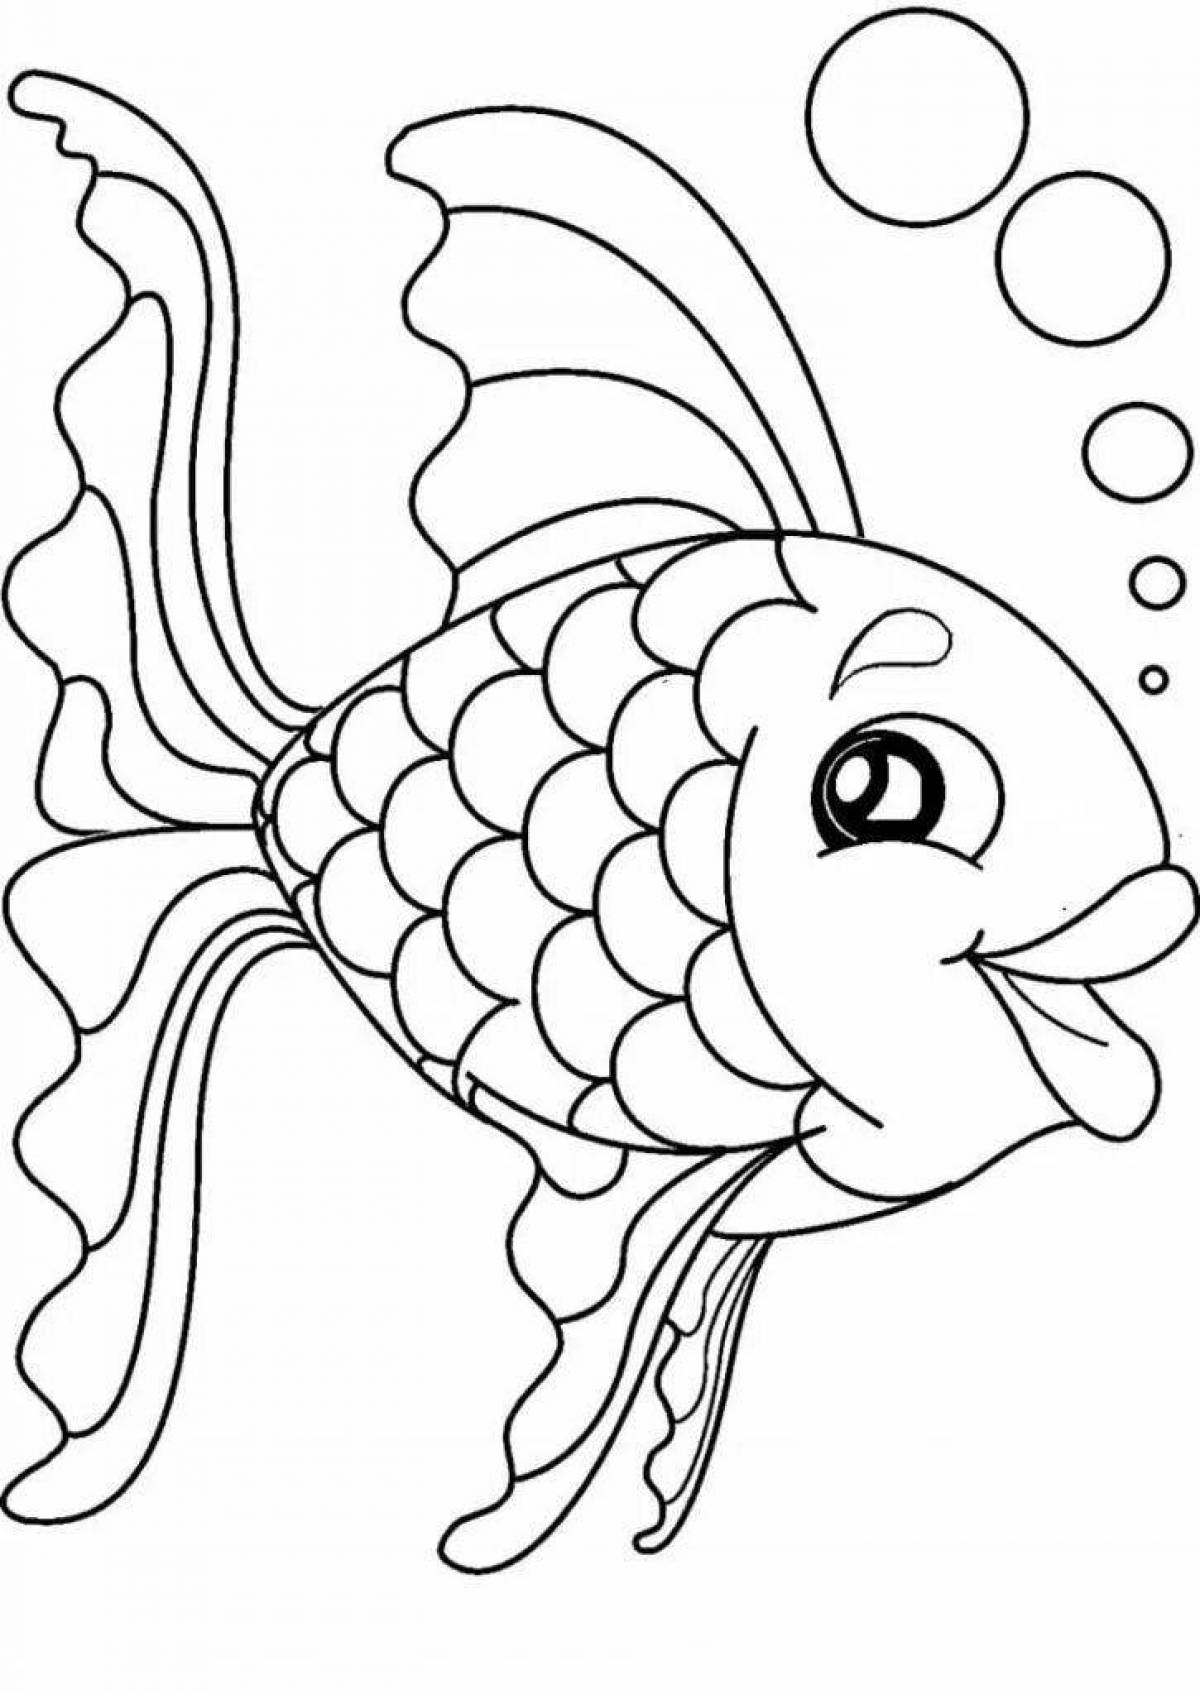 Игривый рисунок золотой рыбки